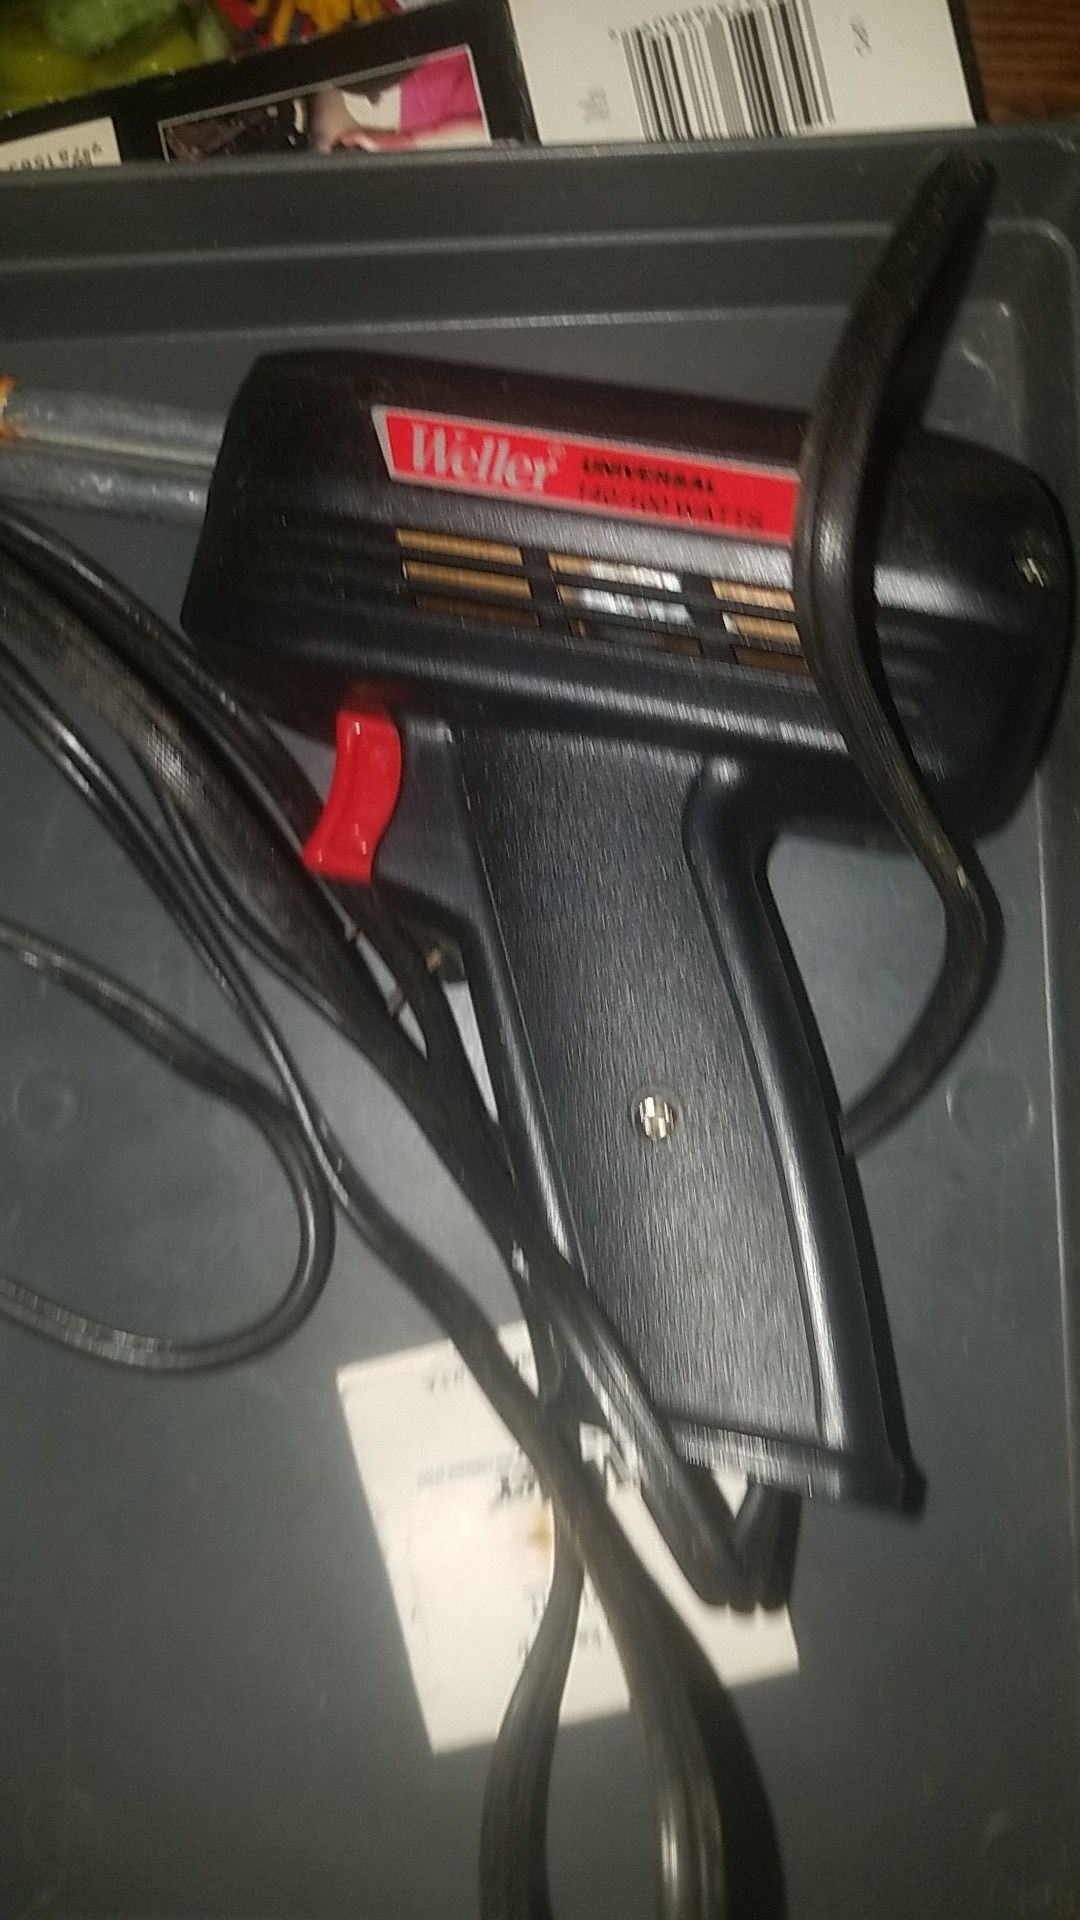 Weller soldering iron in case